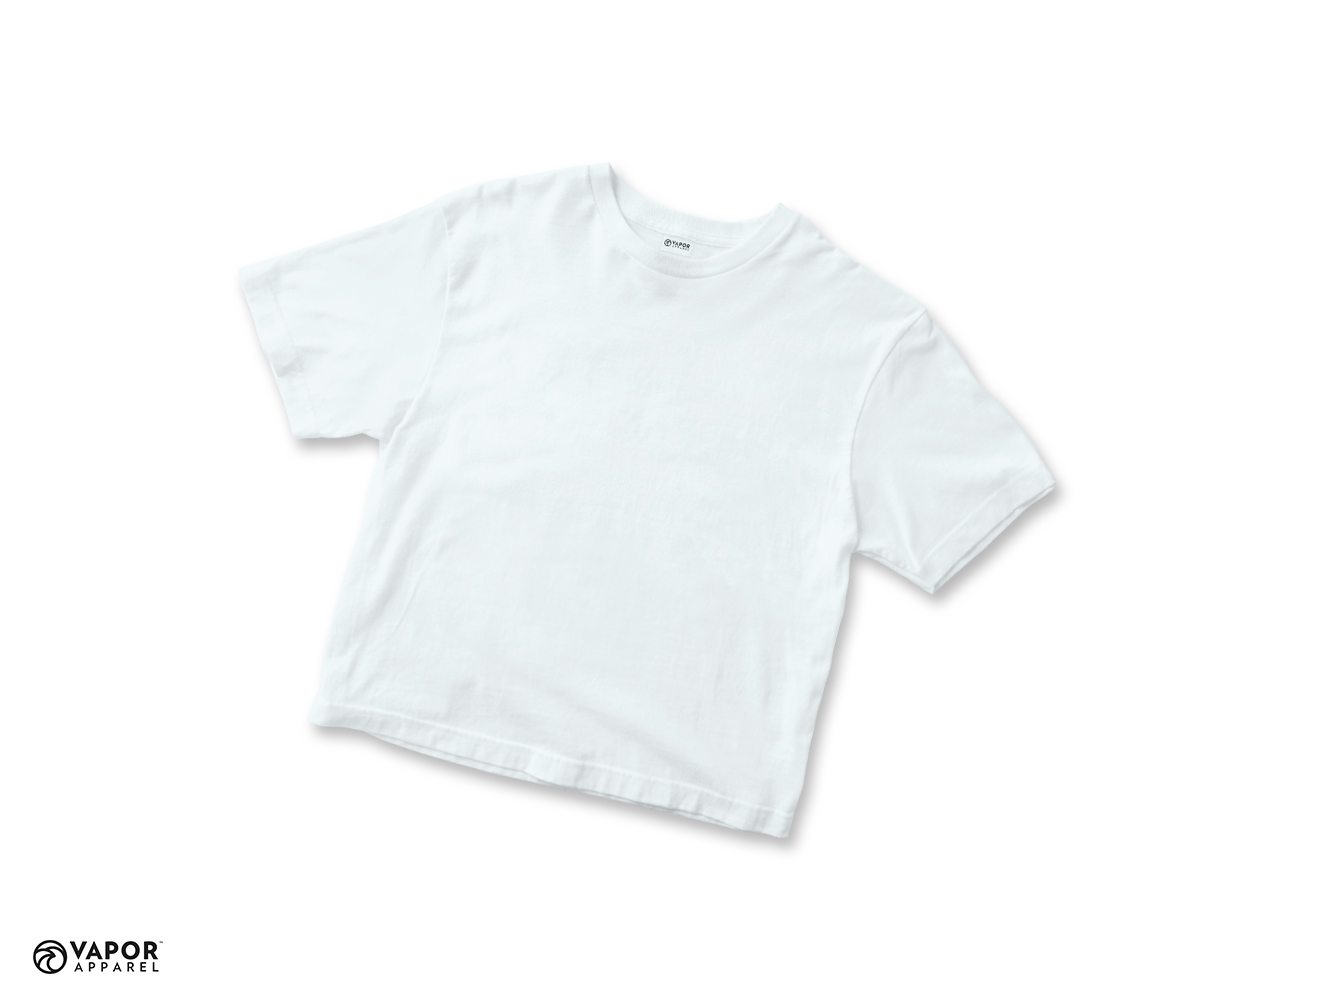 Vapor Sublimation T-Shirt for Junior size 164 - White